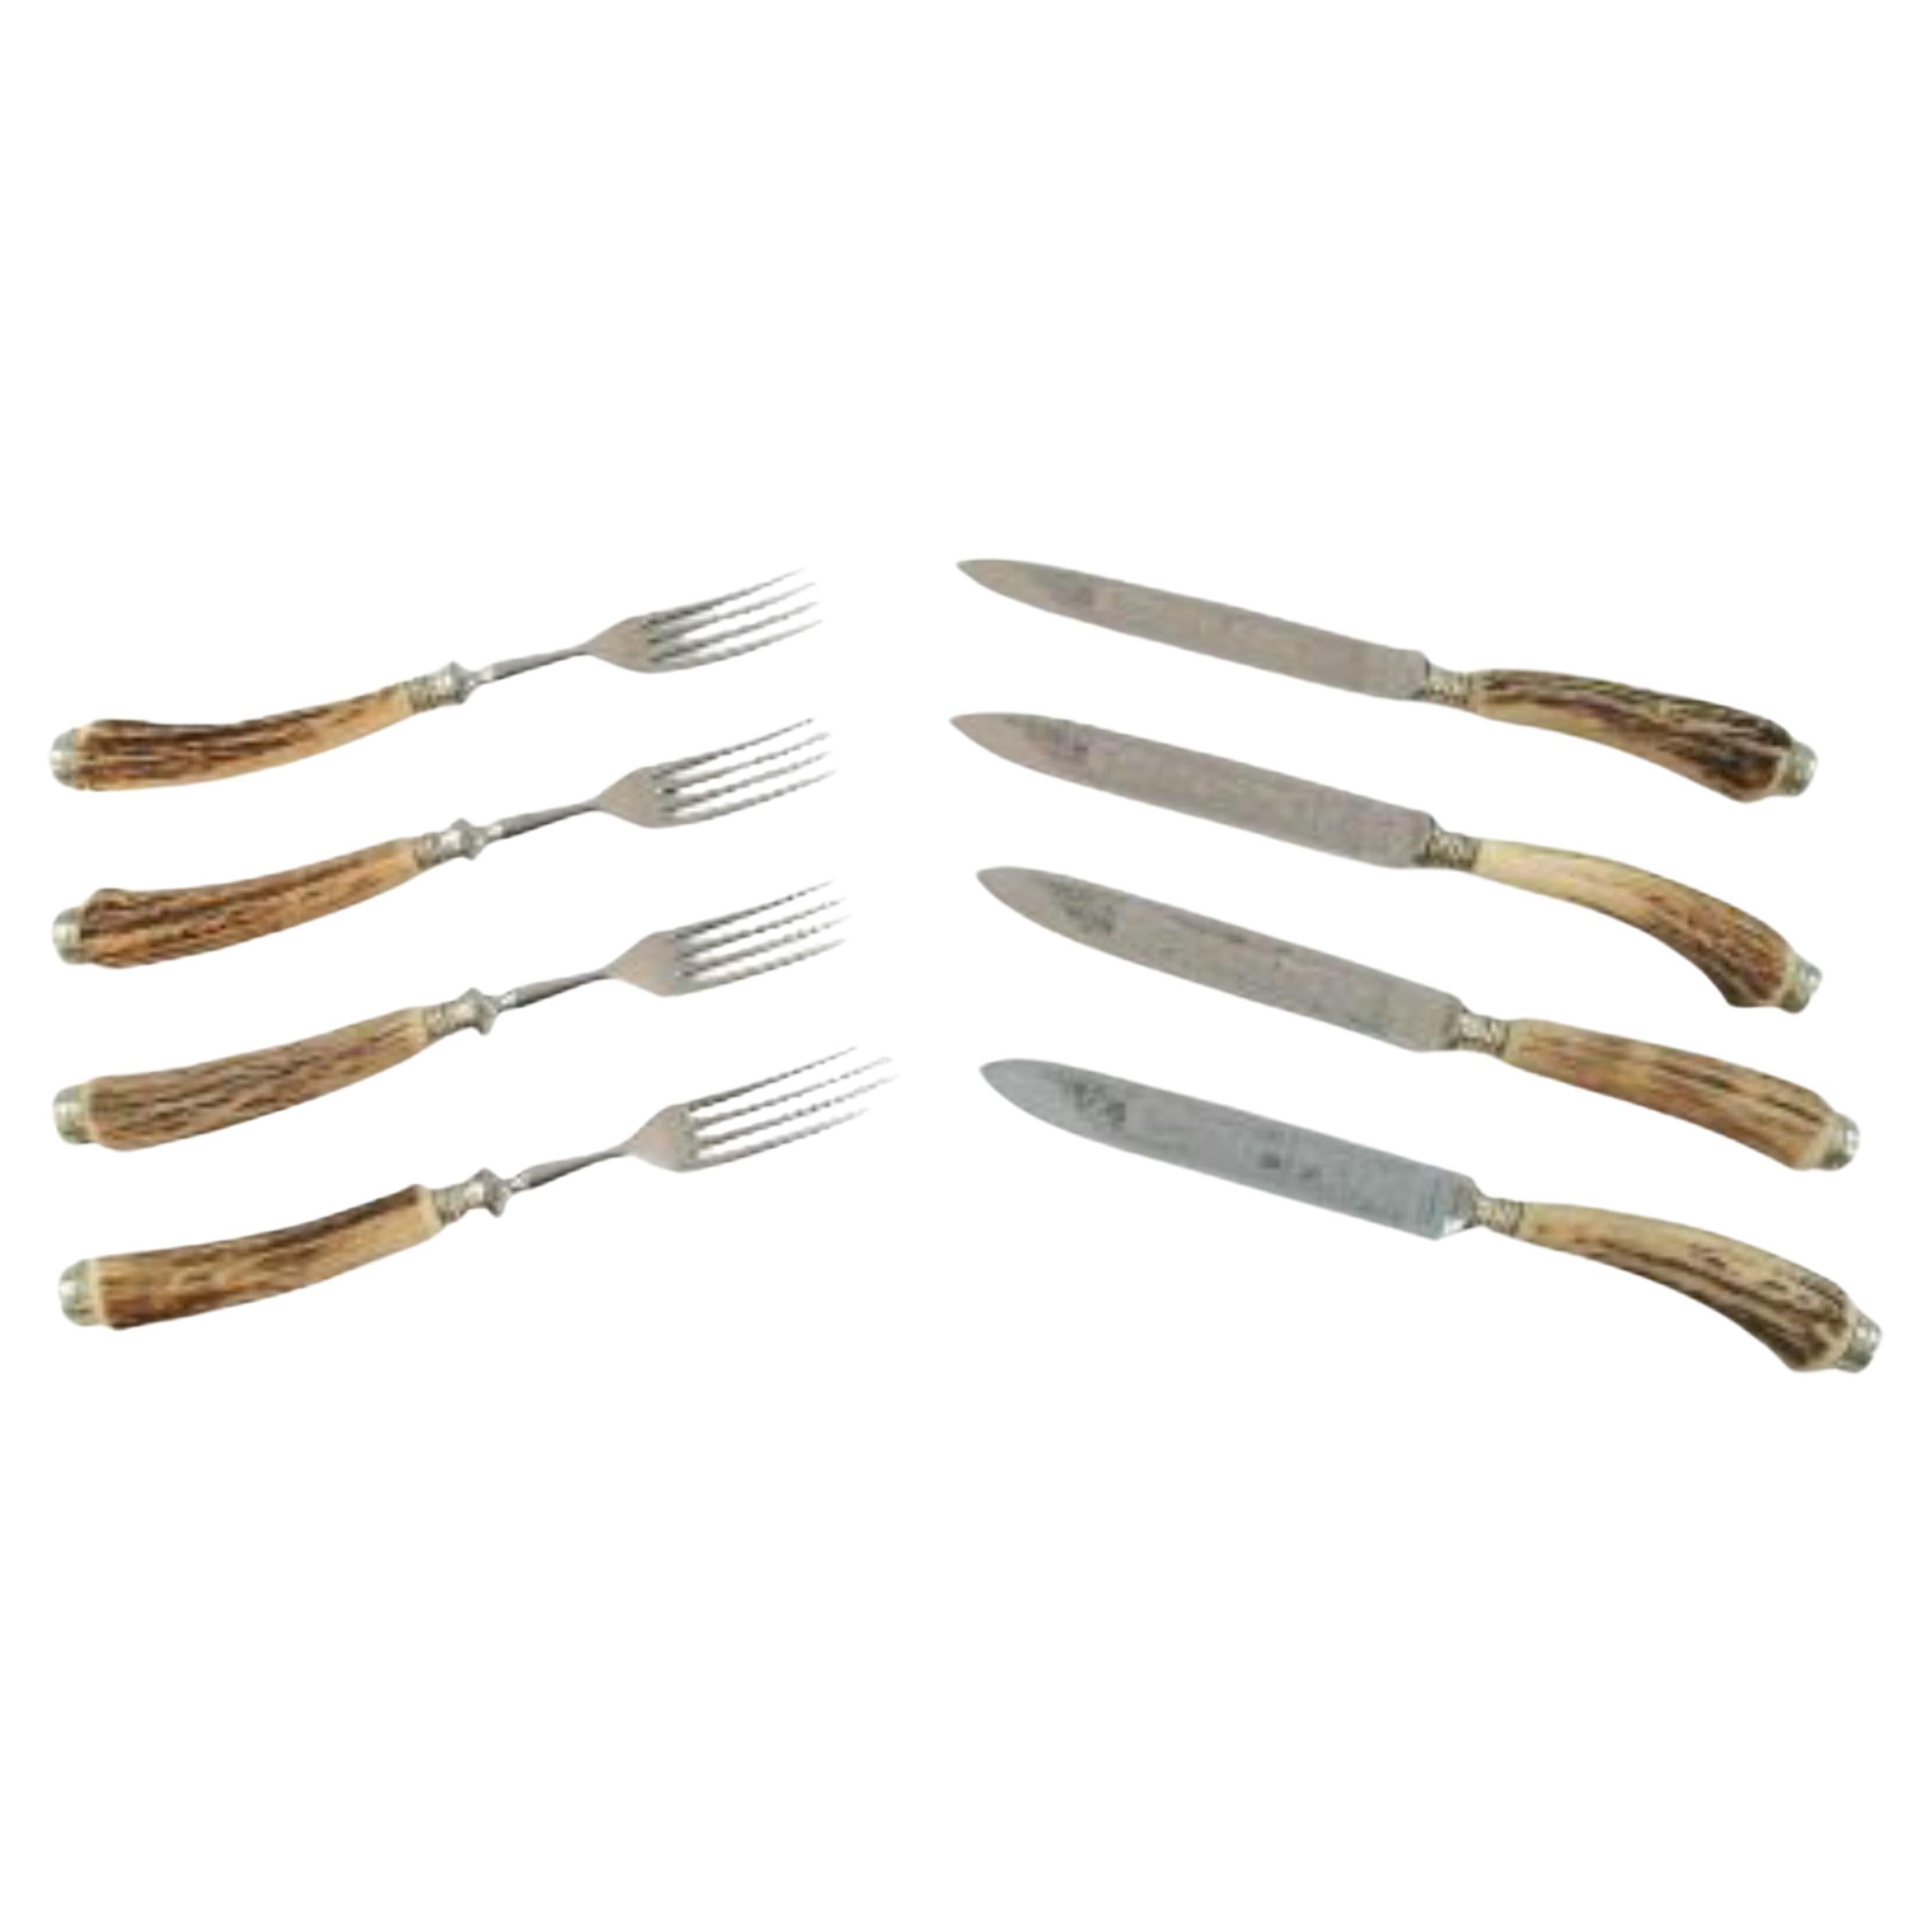 SOLINGEN - Set of 4 Horn Handled Steak Knives & Forks - Germany - Circa 1950's